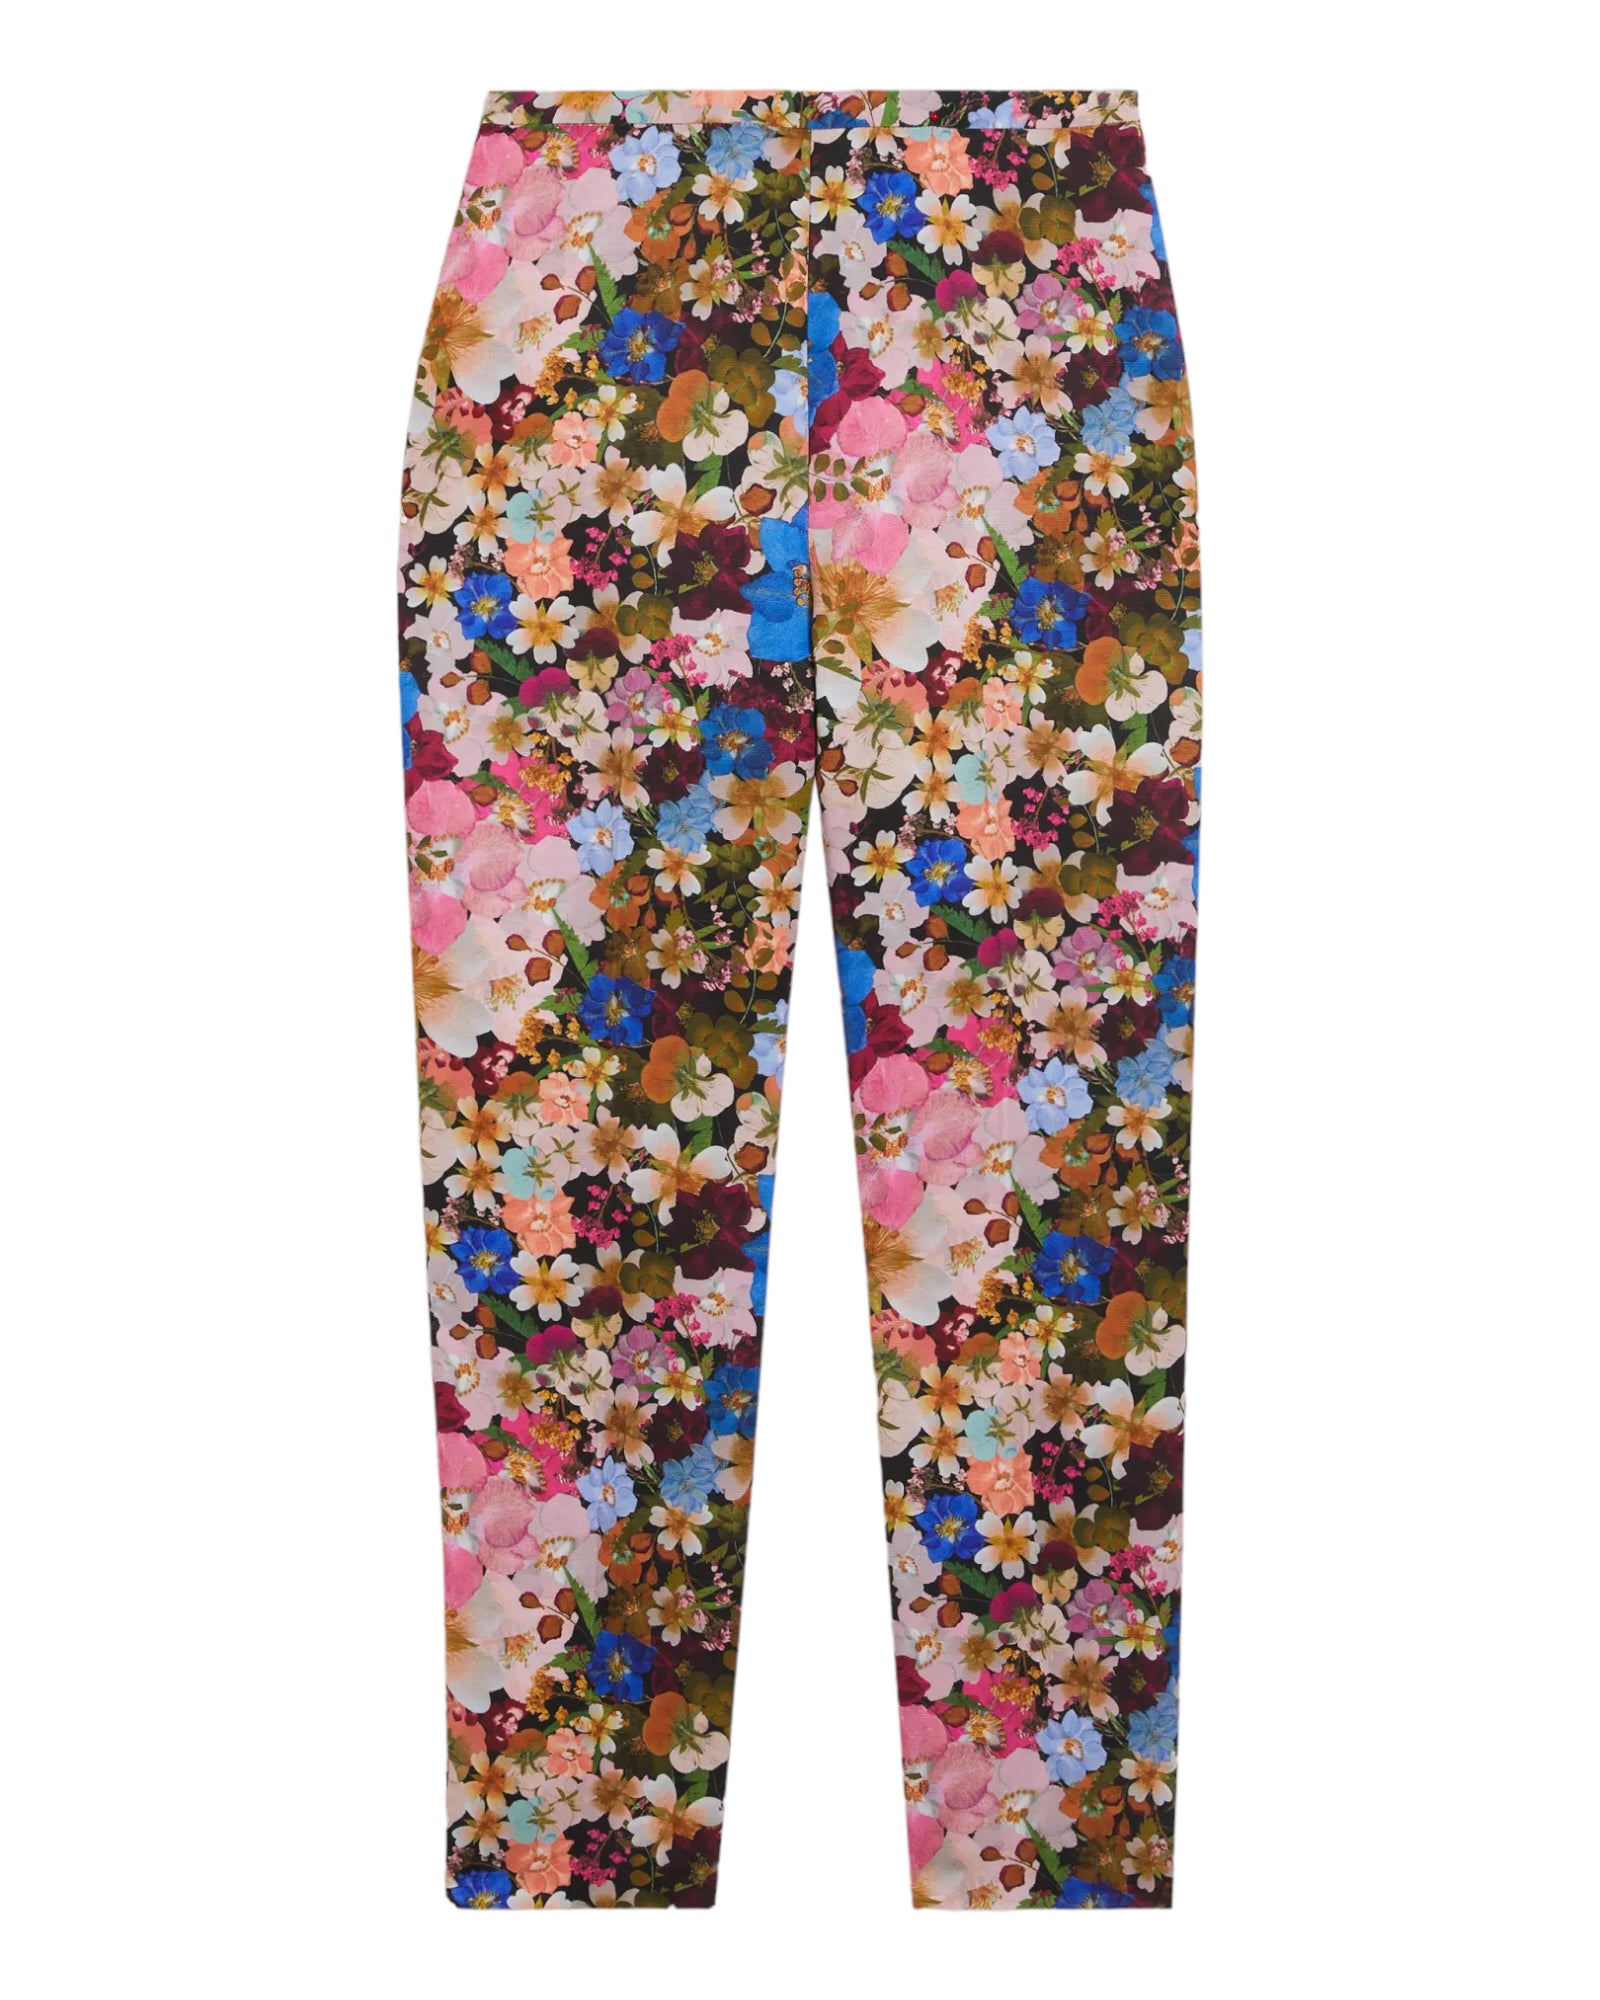 Παντελόνι κουστουμιού με floral print MADONID